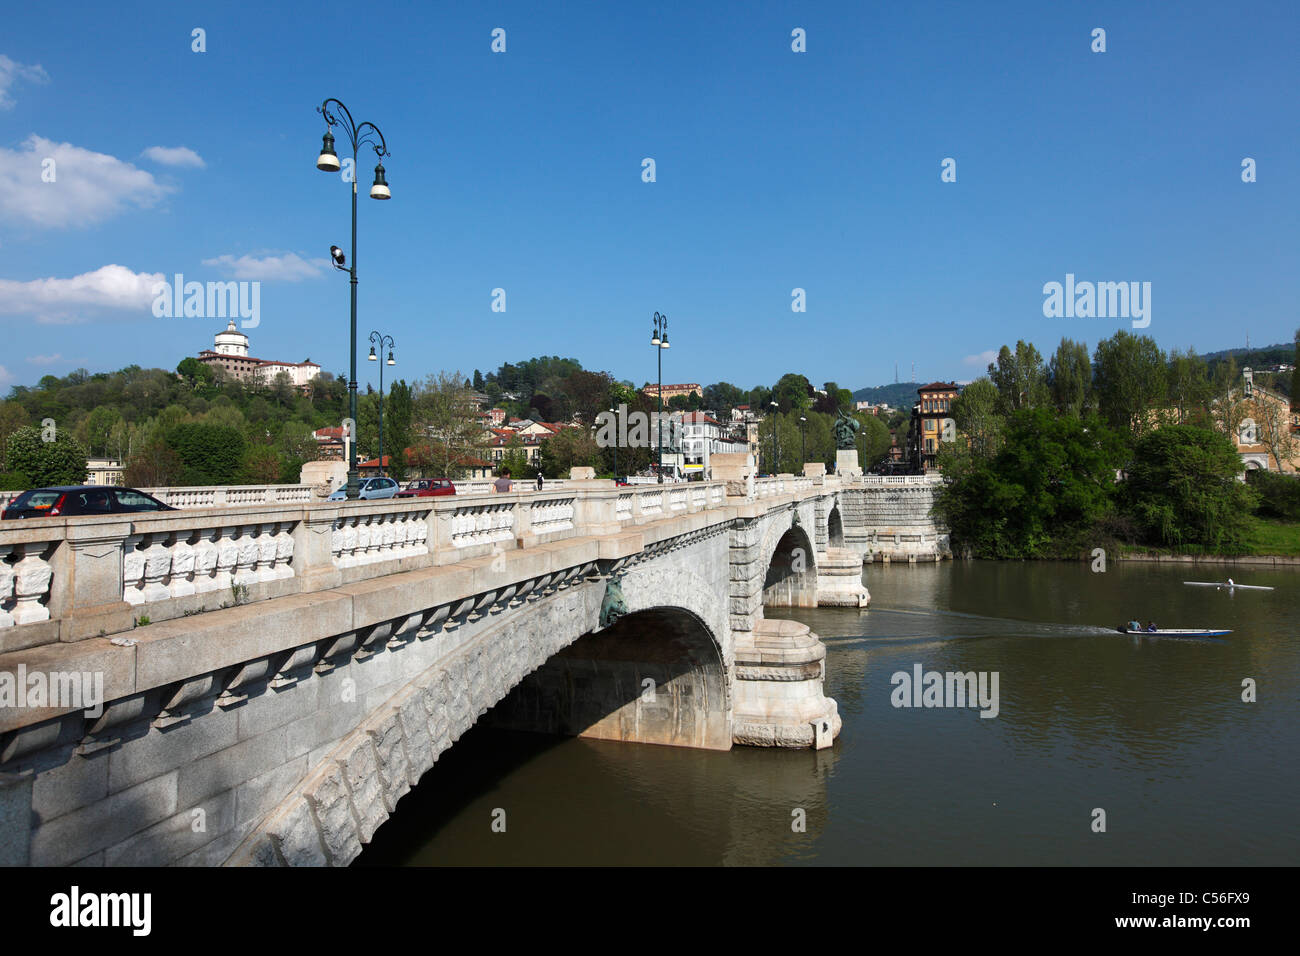 Po river, Turin, Italy, Europe Stock Photo